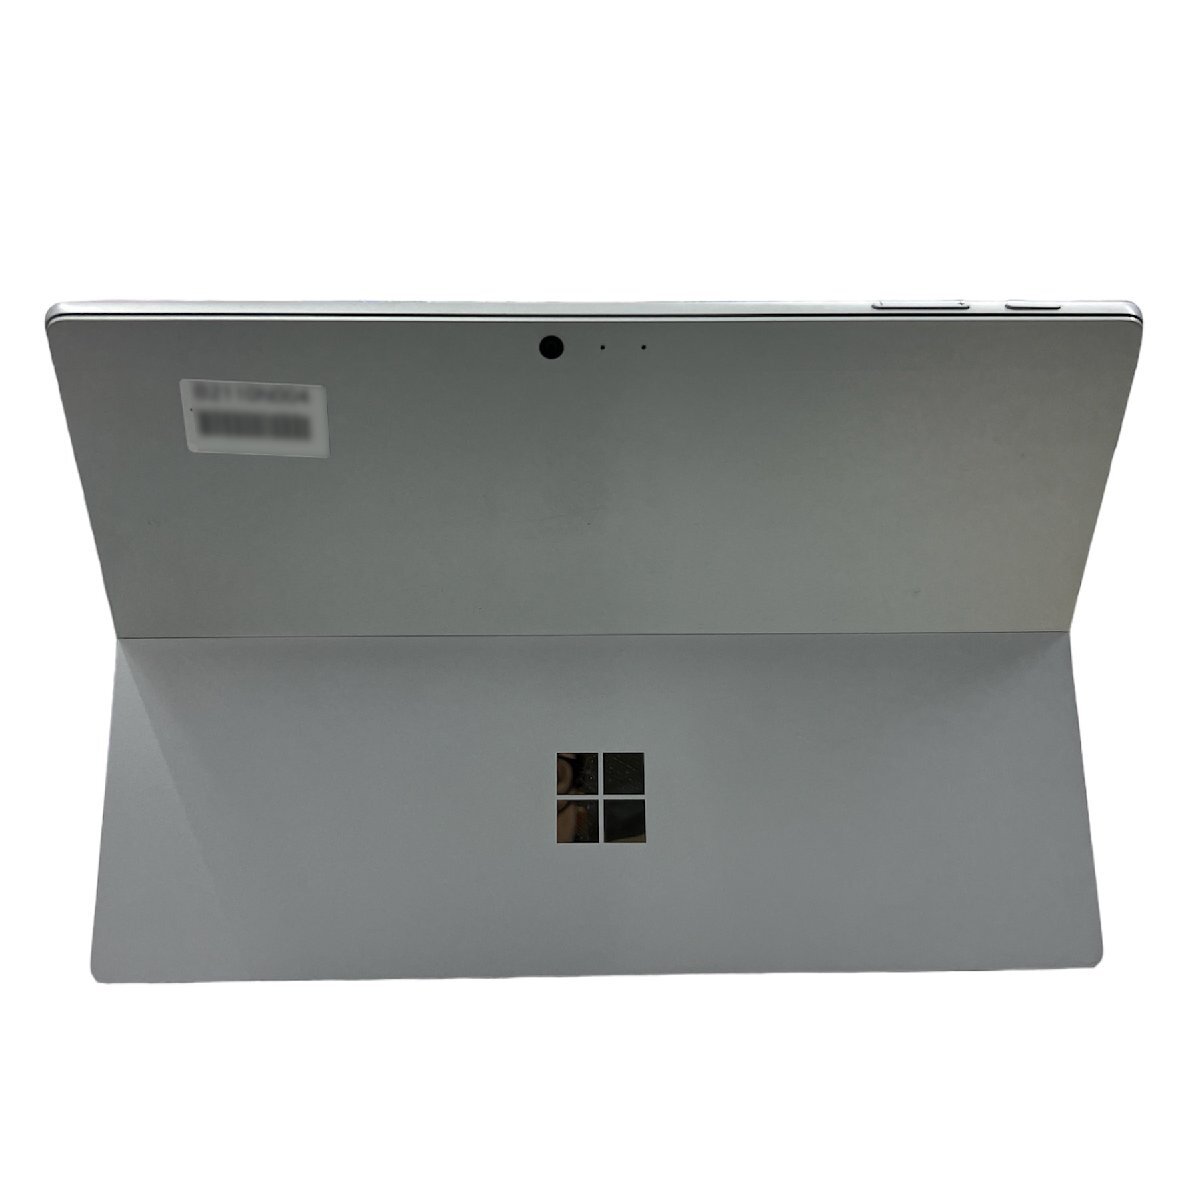 訳あり Microsoft Surface Pro FJY-00014 Core i5 7300U メモリ 8GB SSD256GB 中古 ノート パソコン PC B2110N004_画像3